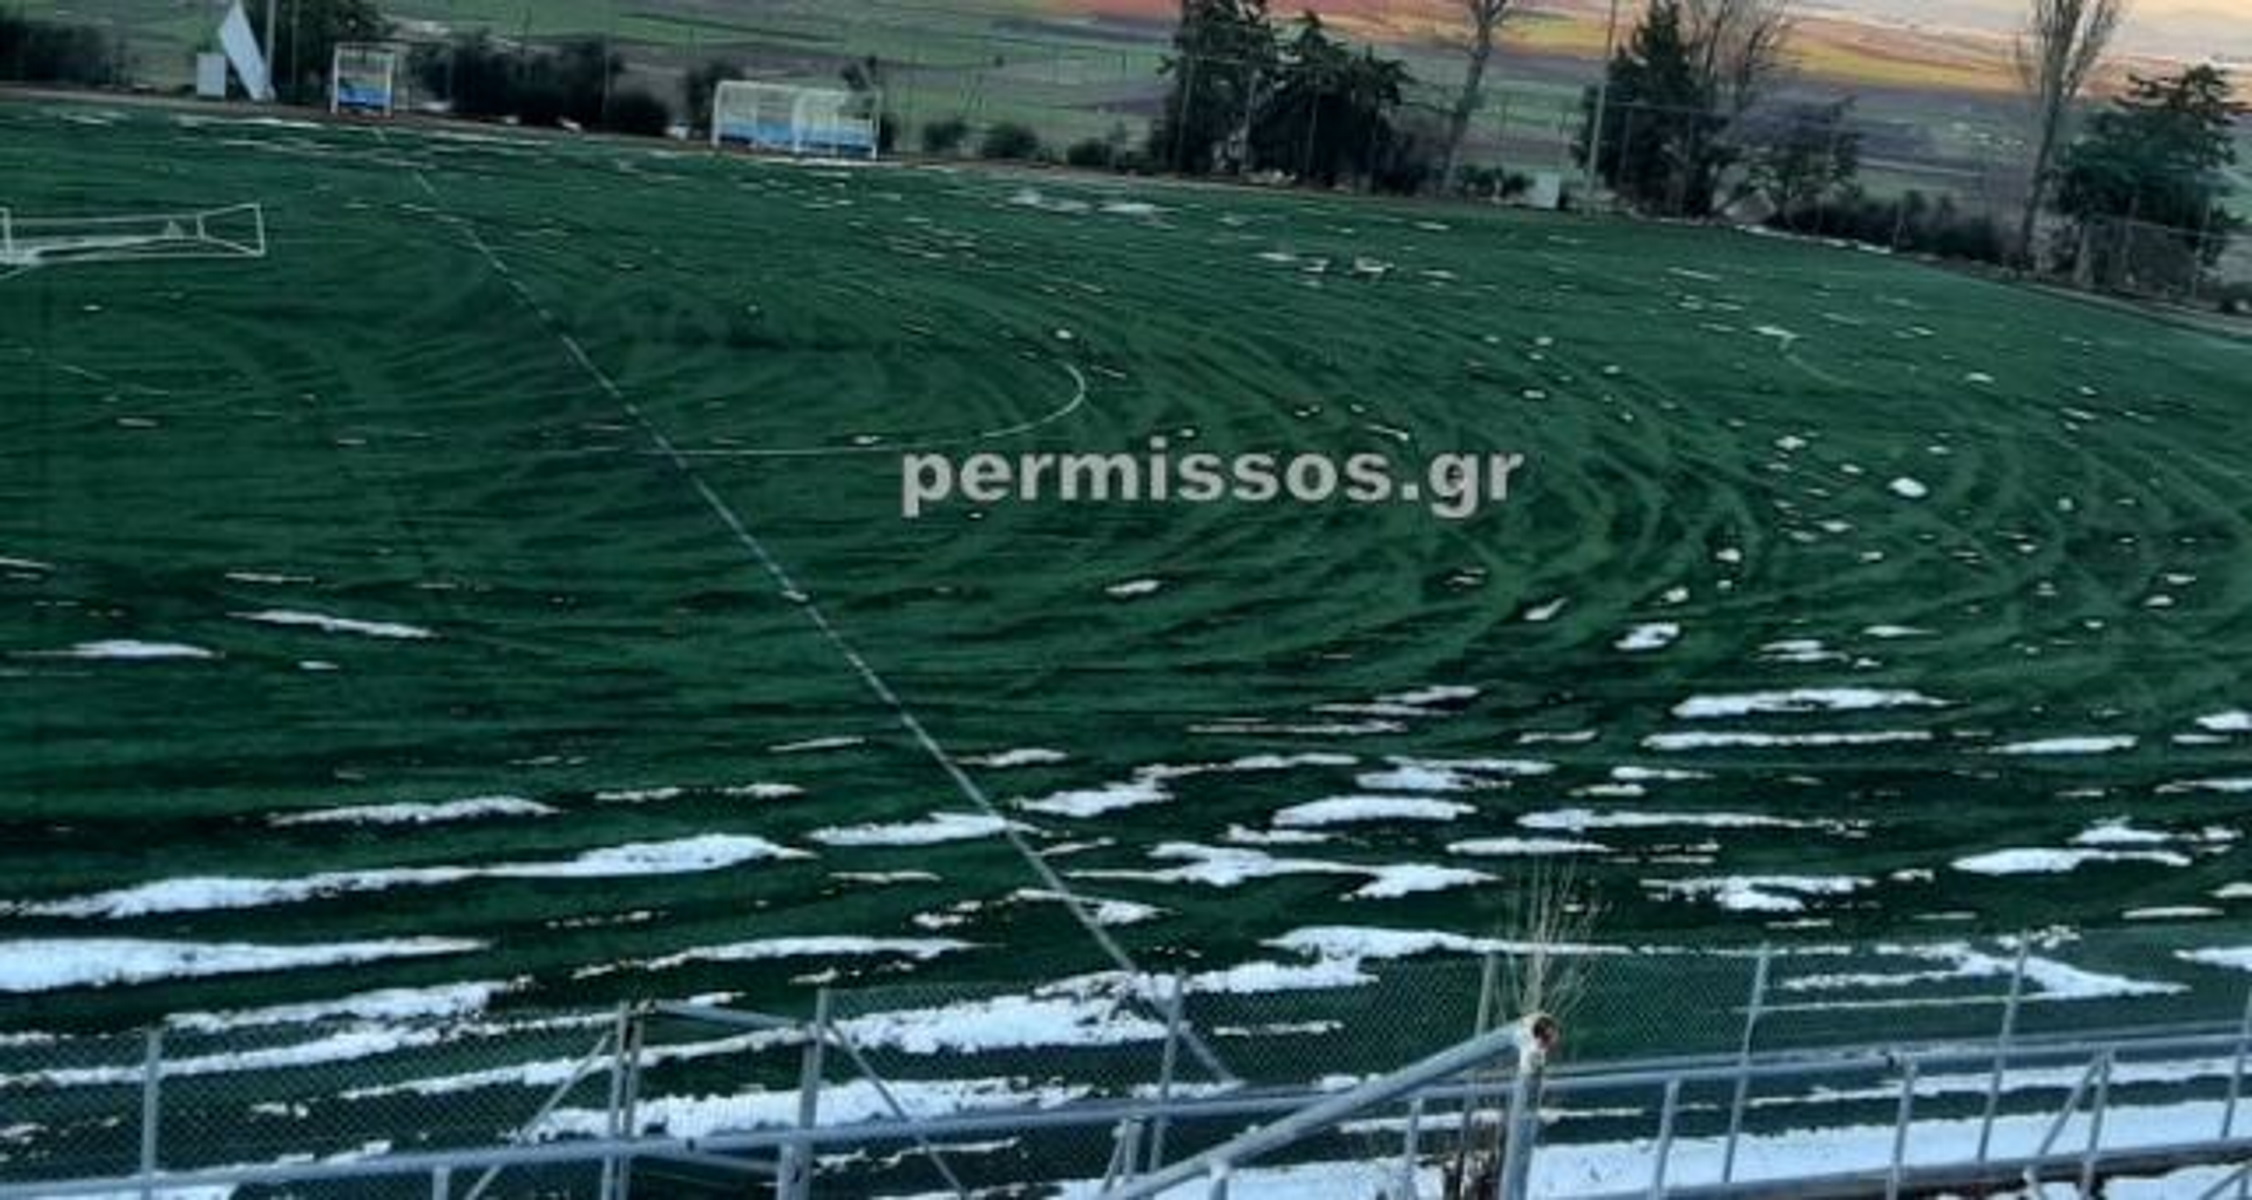 Βοιωτία: «Μπούκαραν» με αγροτικά σε δημοτικό γήπεδο και κατέστρεψαν τον τάπητα (pics)